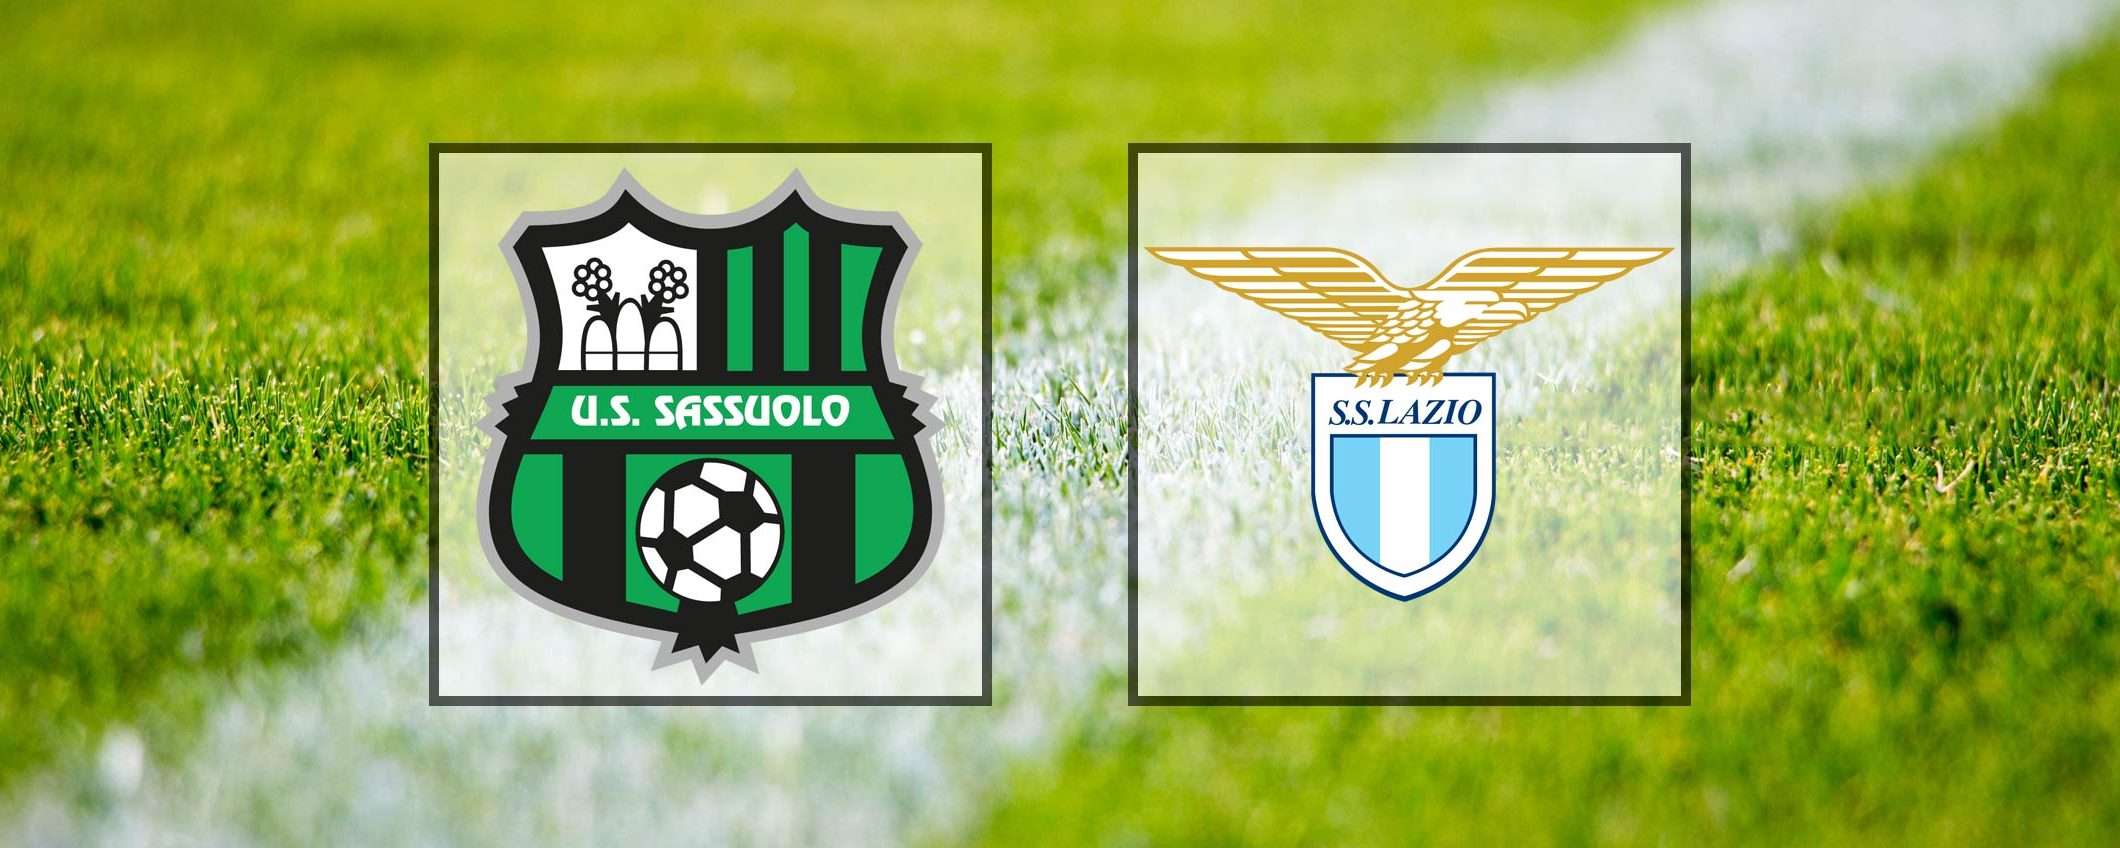 Come vedere Sassuolo-Lazio in streaming